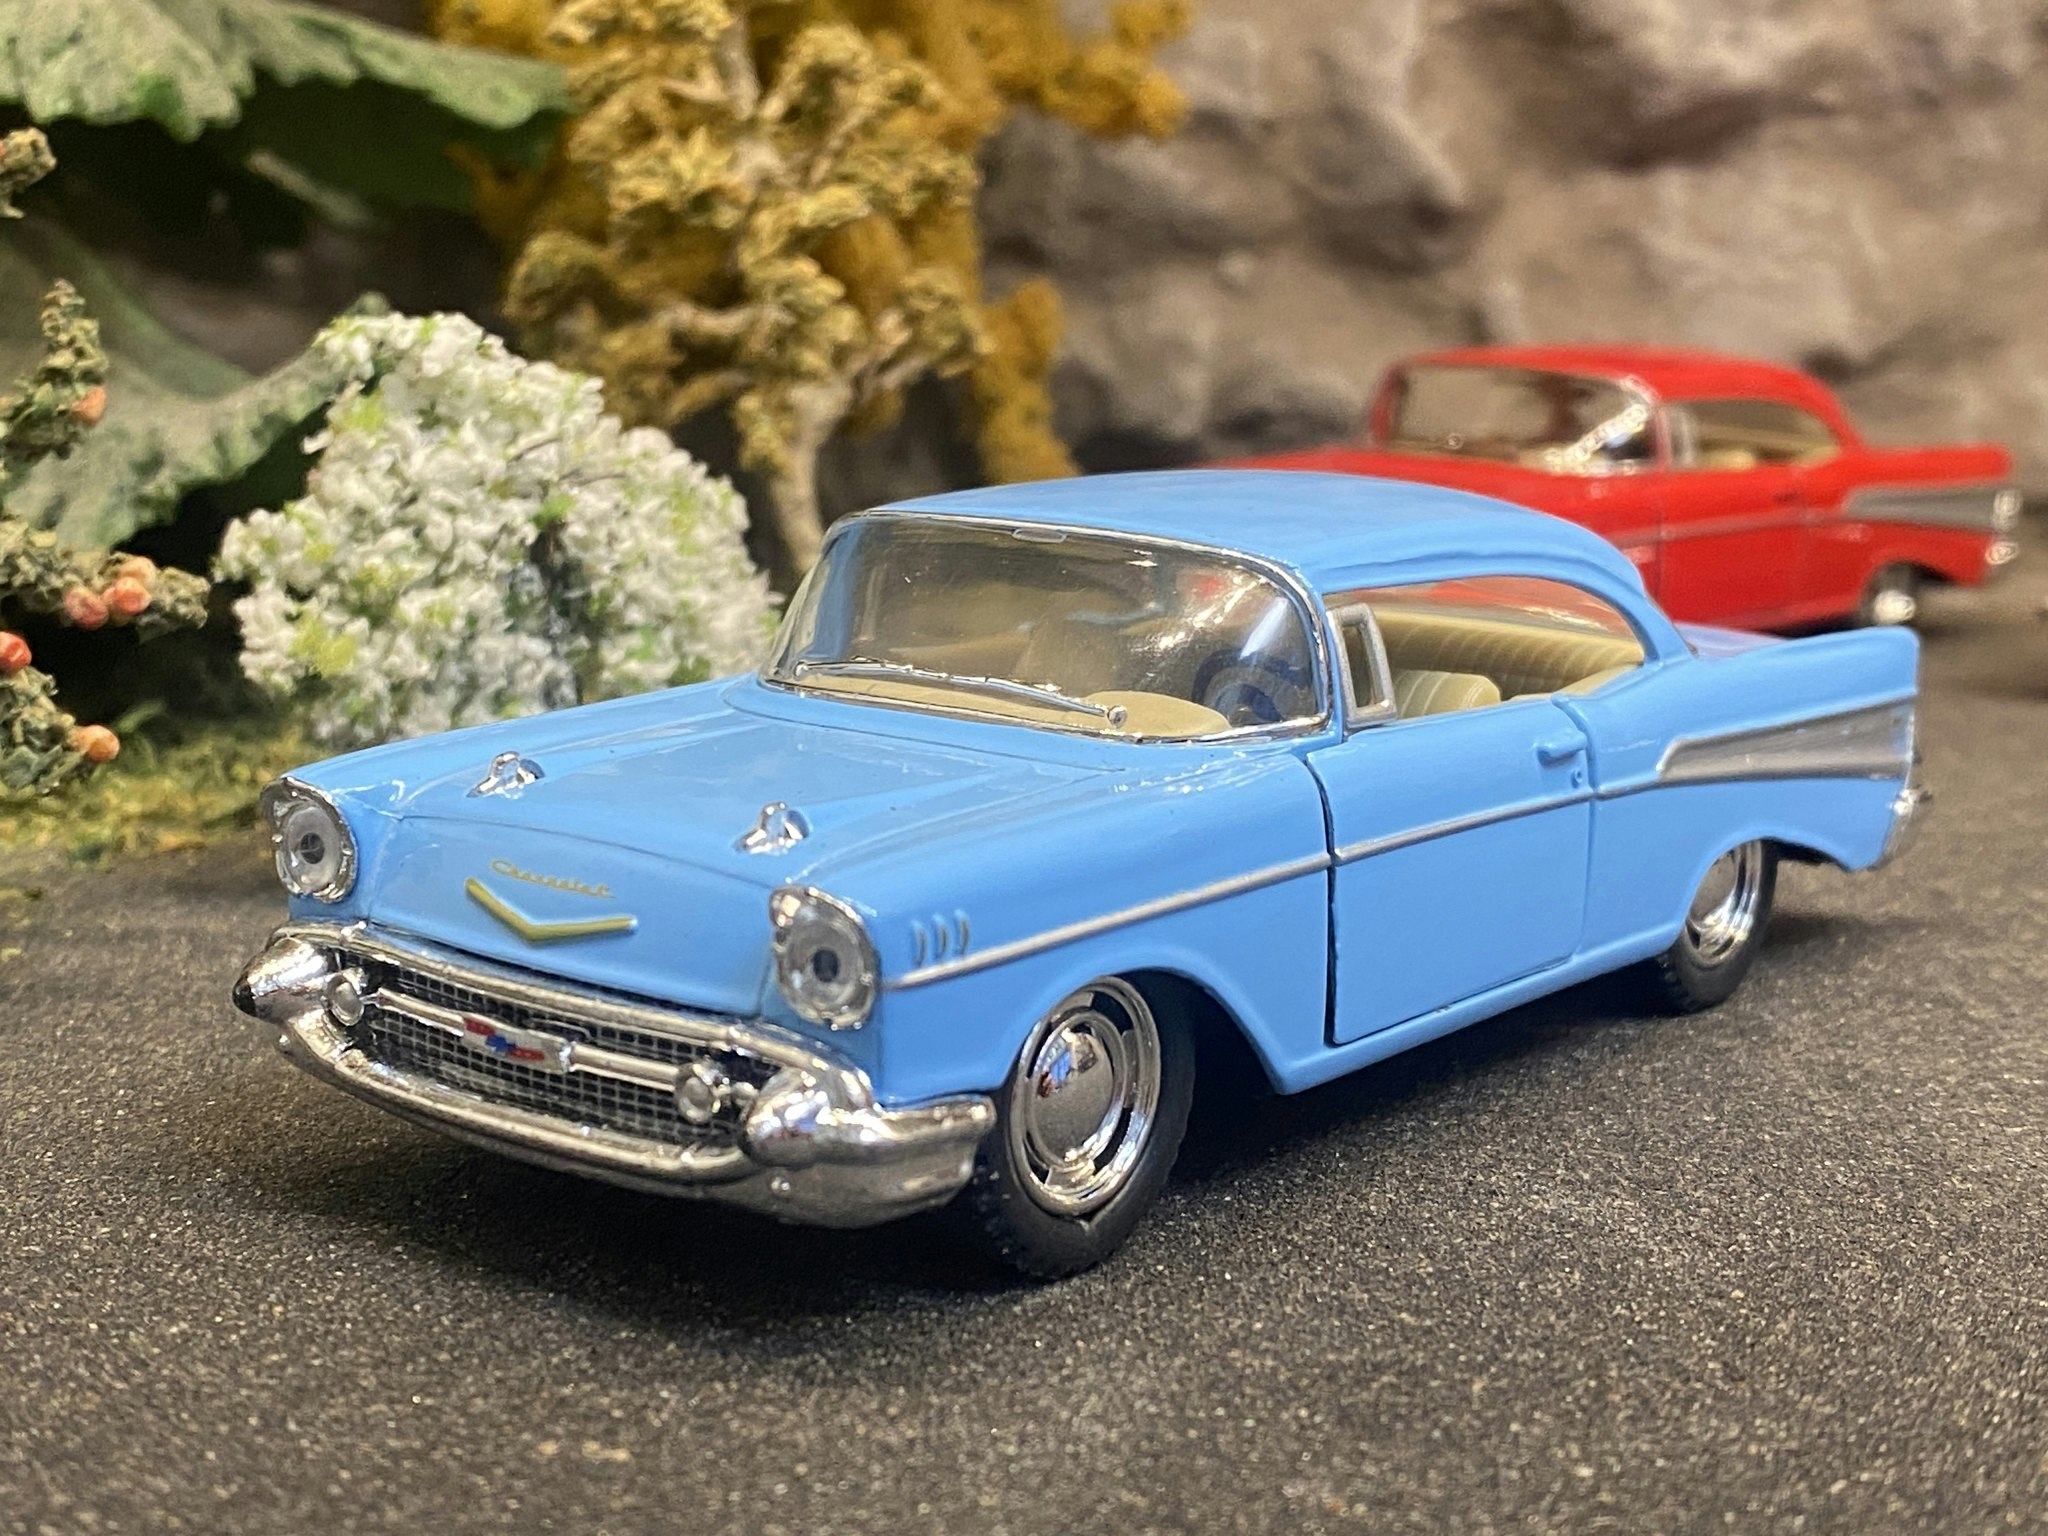 Skala 1/43 (1/40) Chevrolet Bel Air 1957, Light blue fr Kinsmart